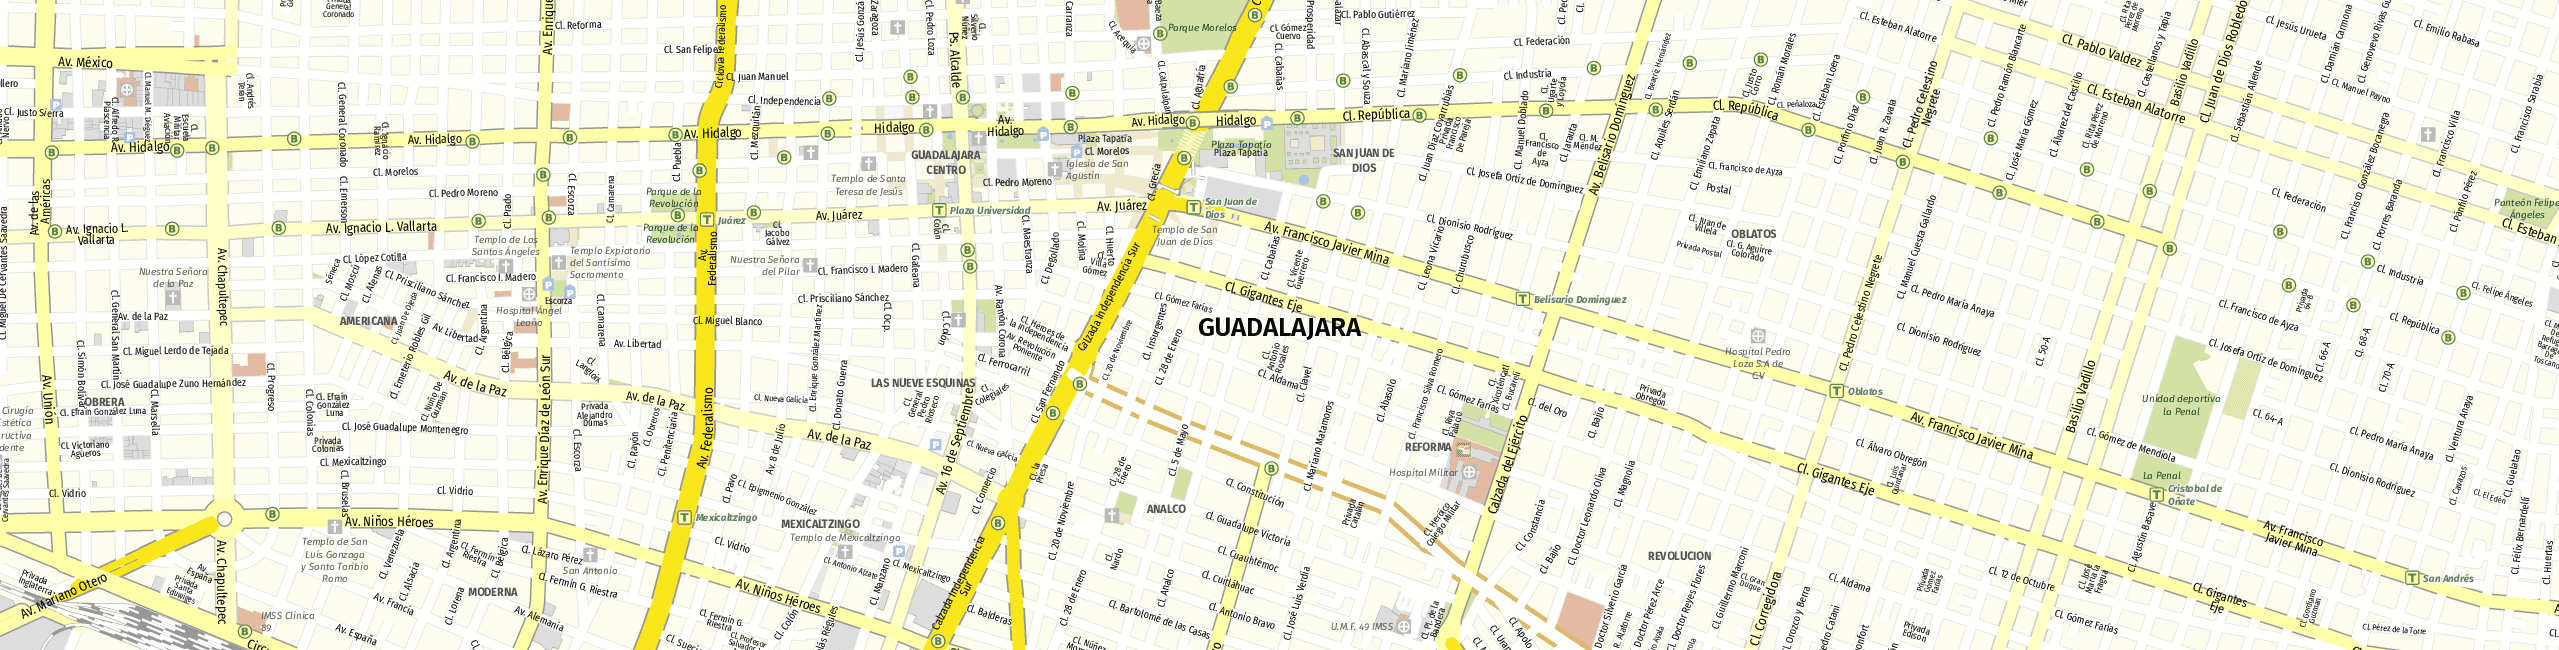 Stadtplan Guadalajara zum Downloaden.